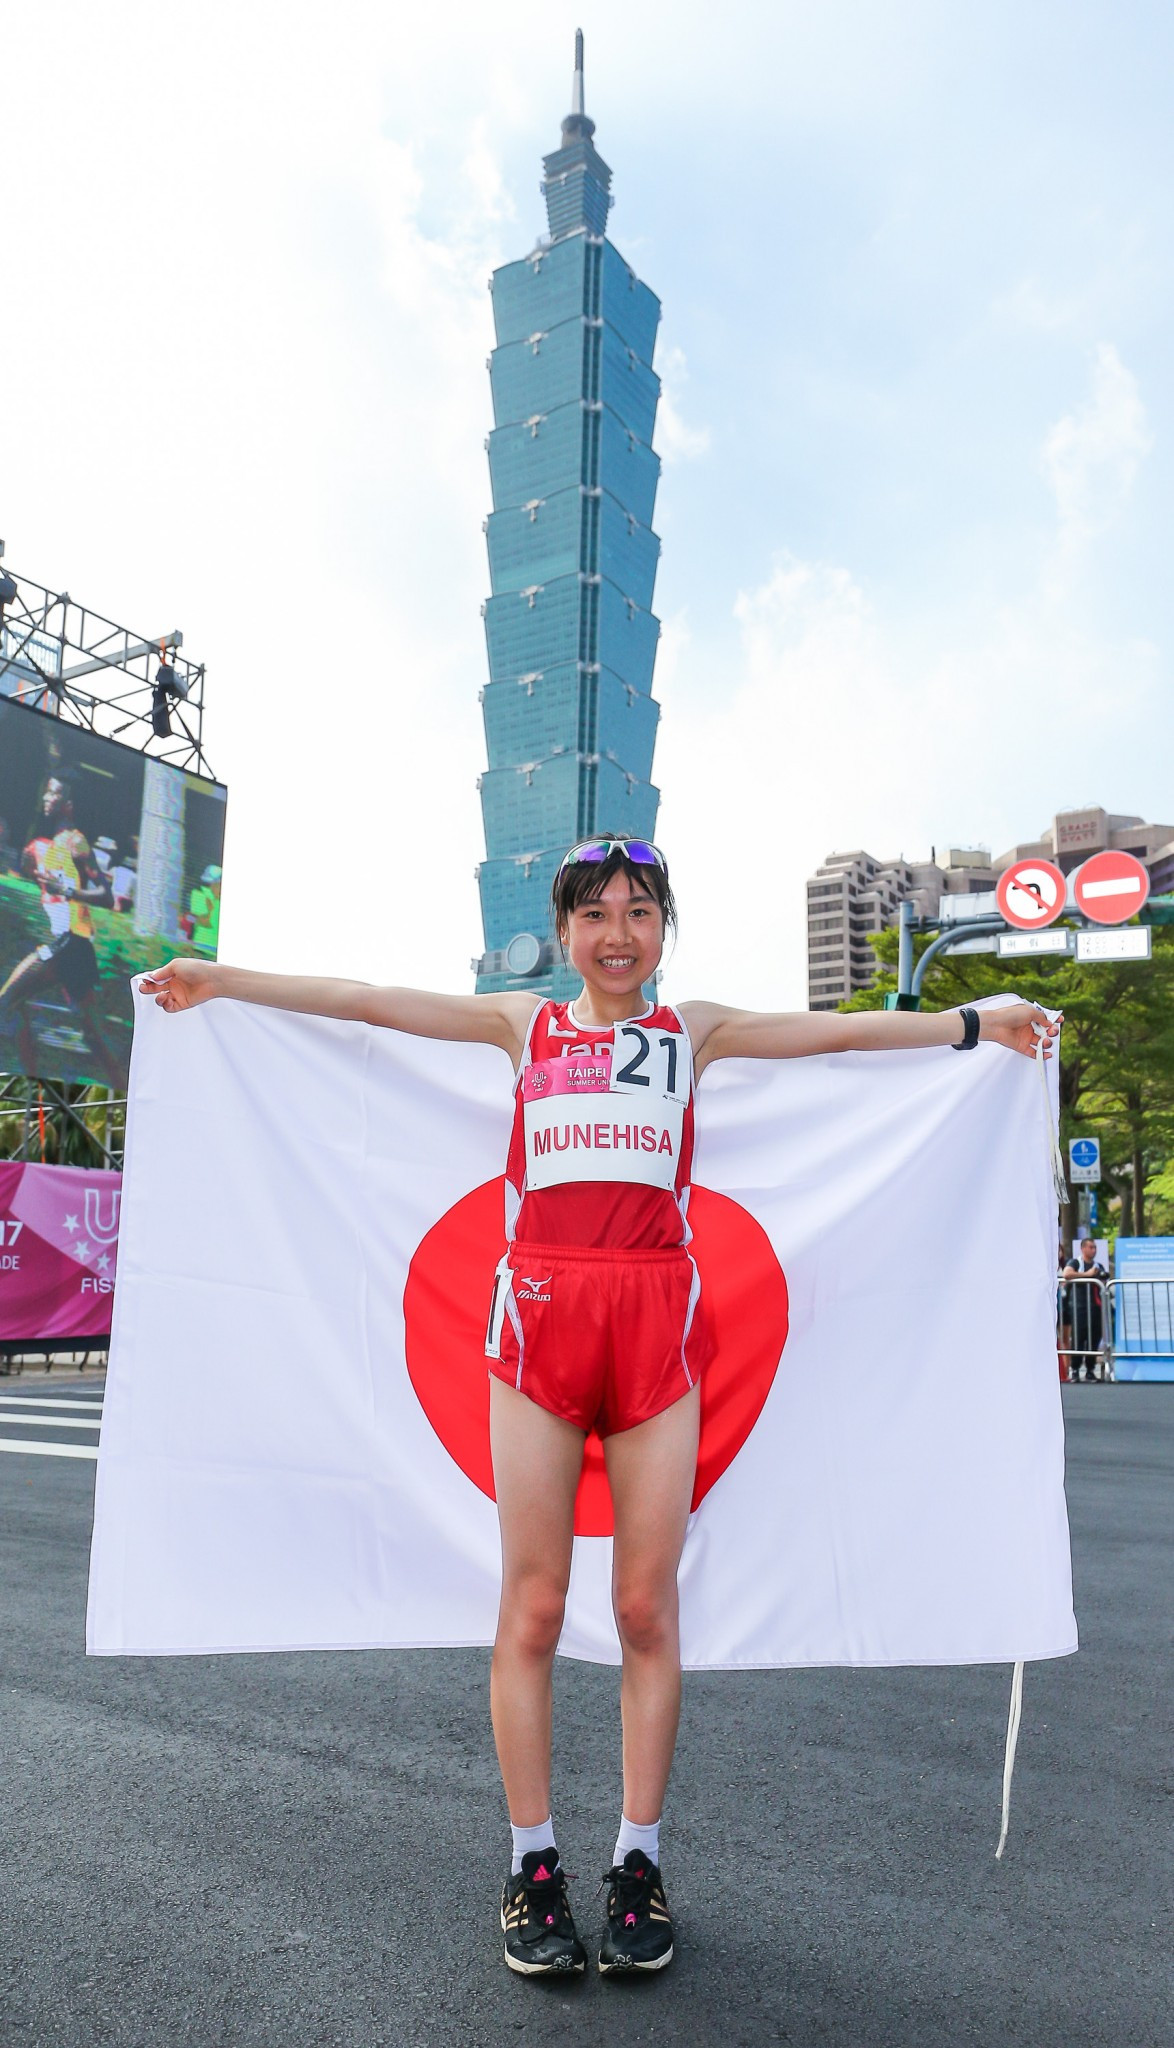 Japan’s Yuki Munehisa triumphed in the women’s half marathon ©Taipei 2017